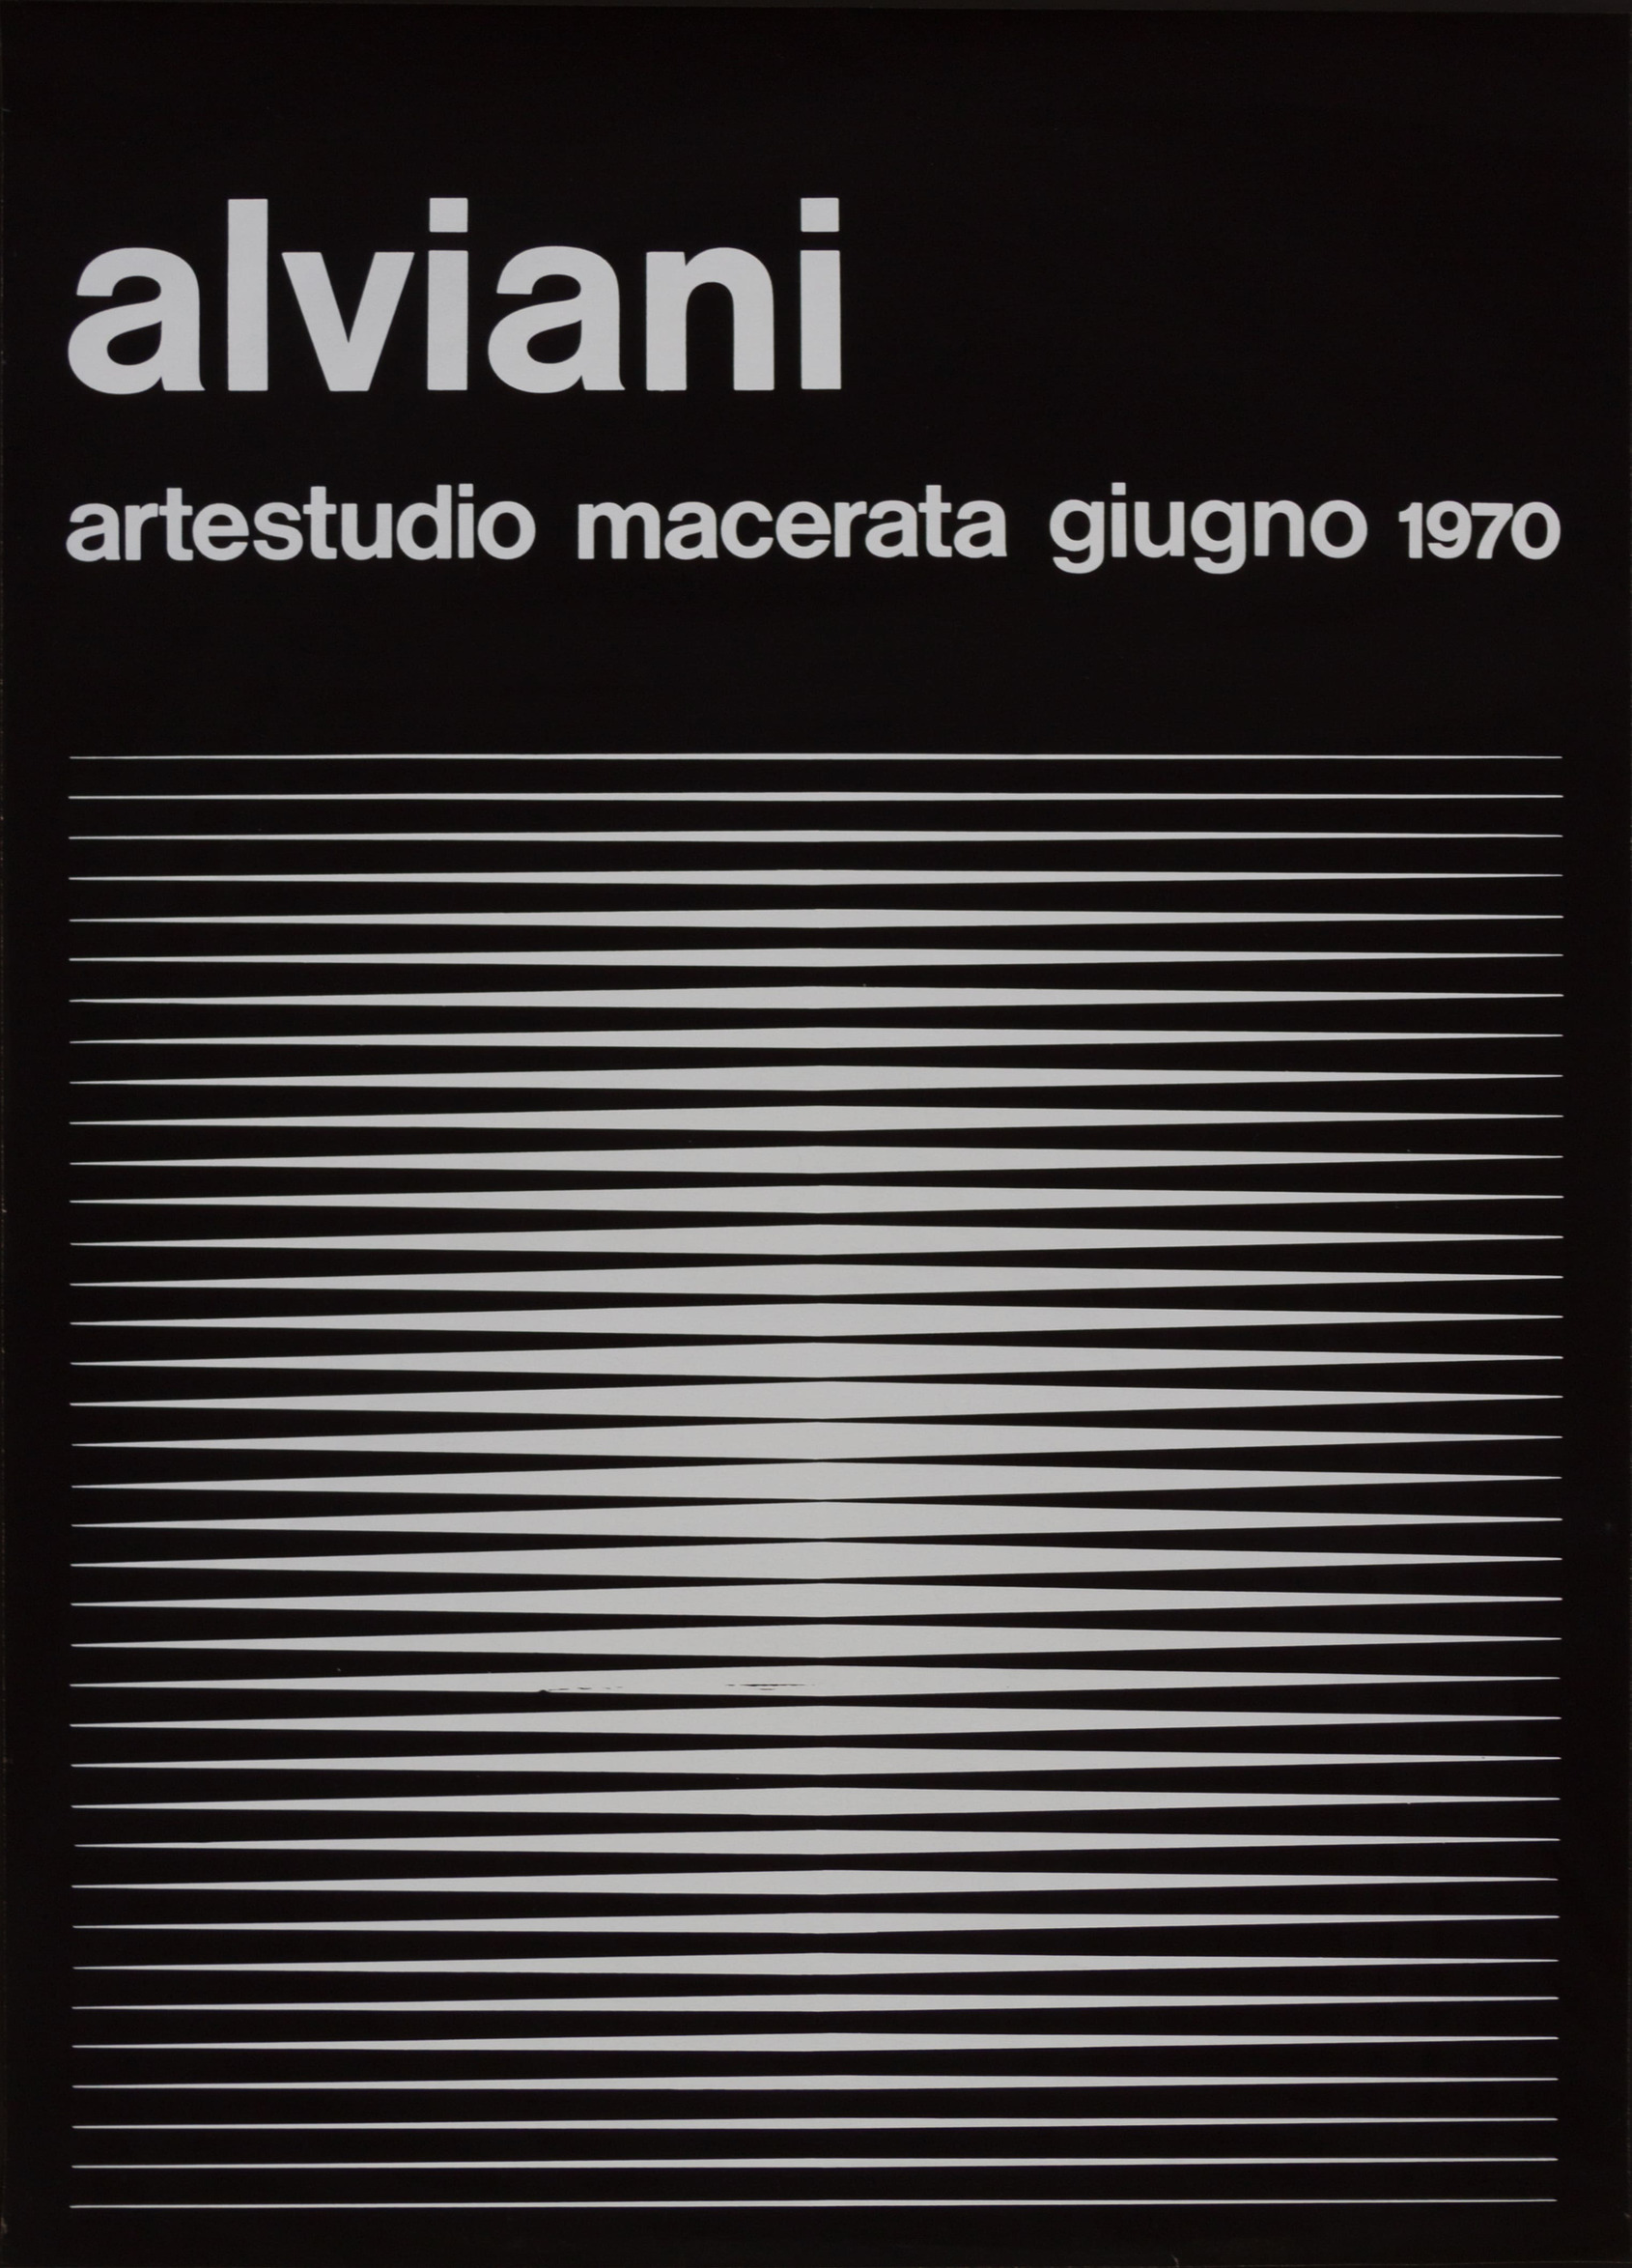 Artestudio - Macerata Getulio Alviani solo exhibition © Centro Studi e Ricerche Getulio Alviani 